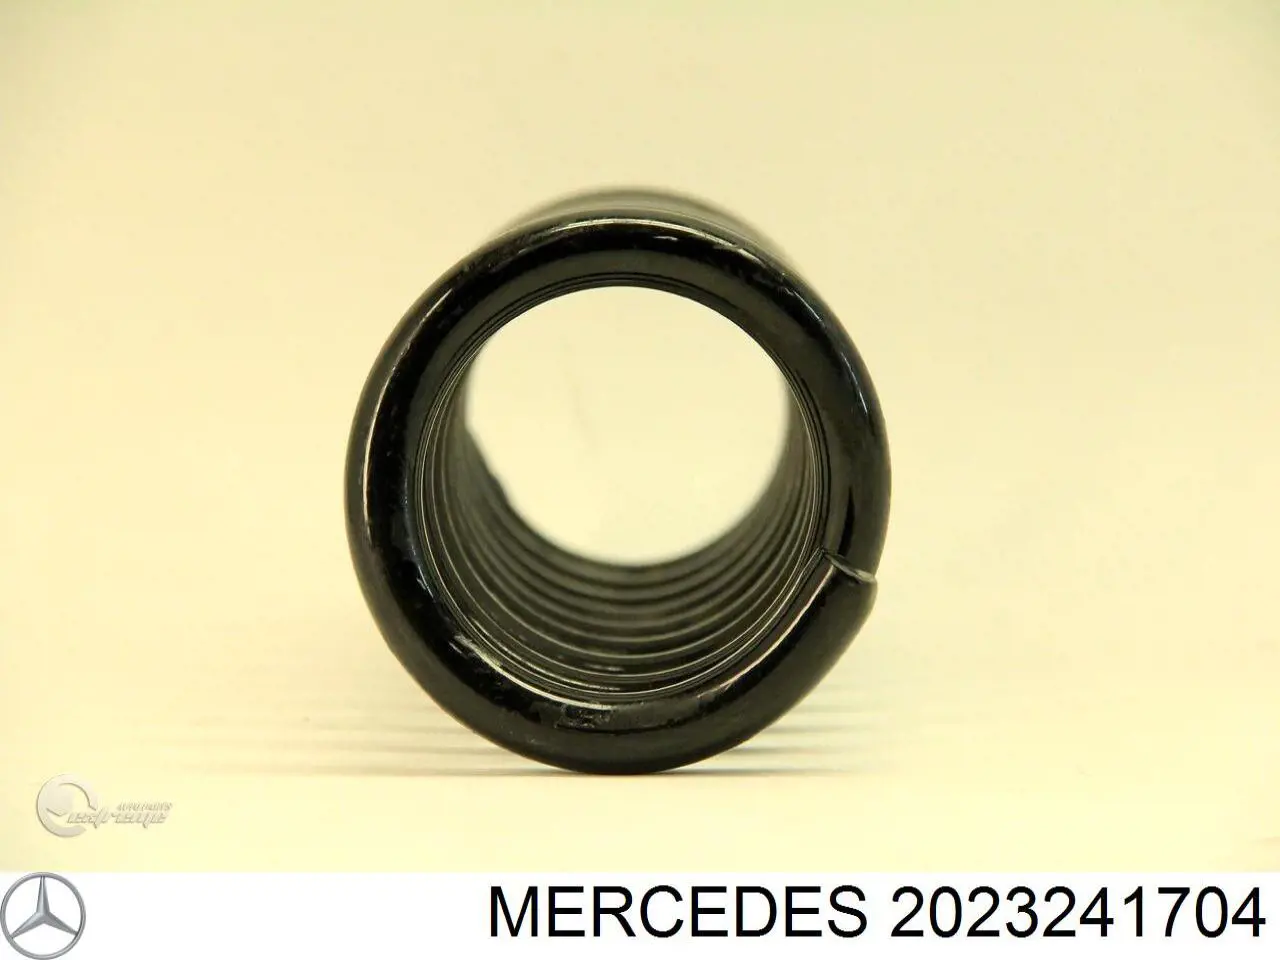 2023241704 Mercedes muelle de suspensión eje trasero